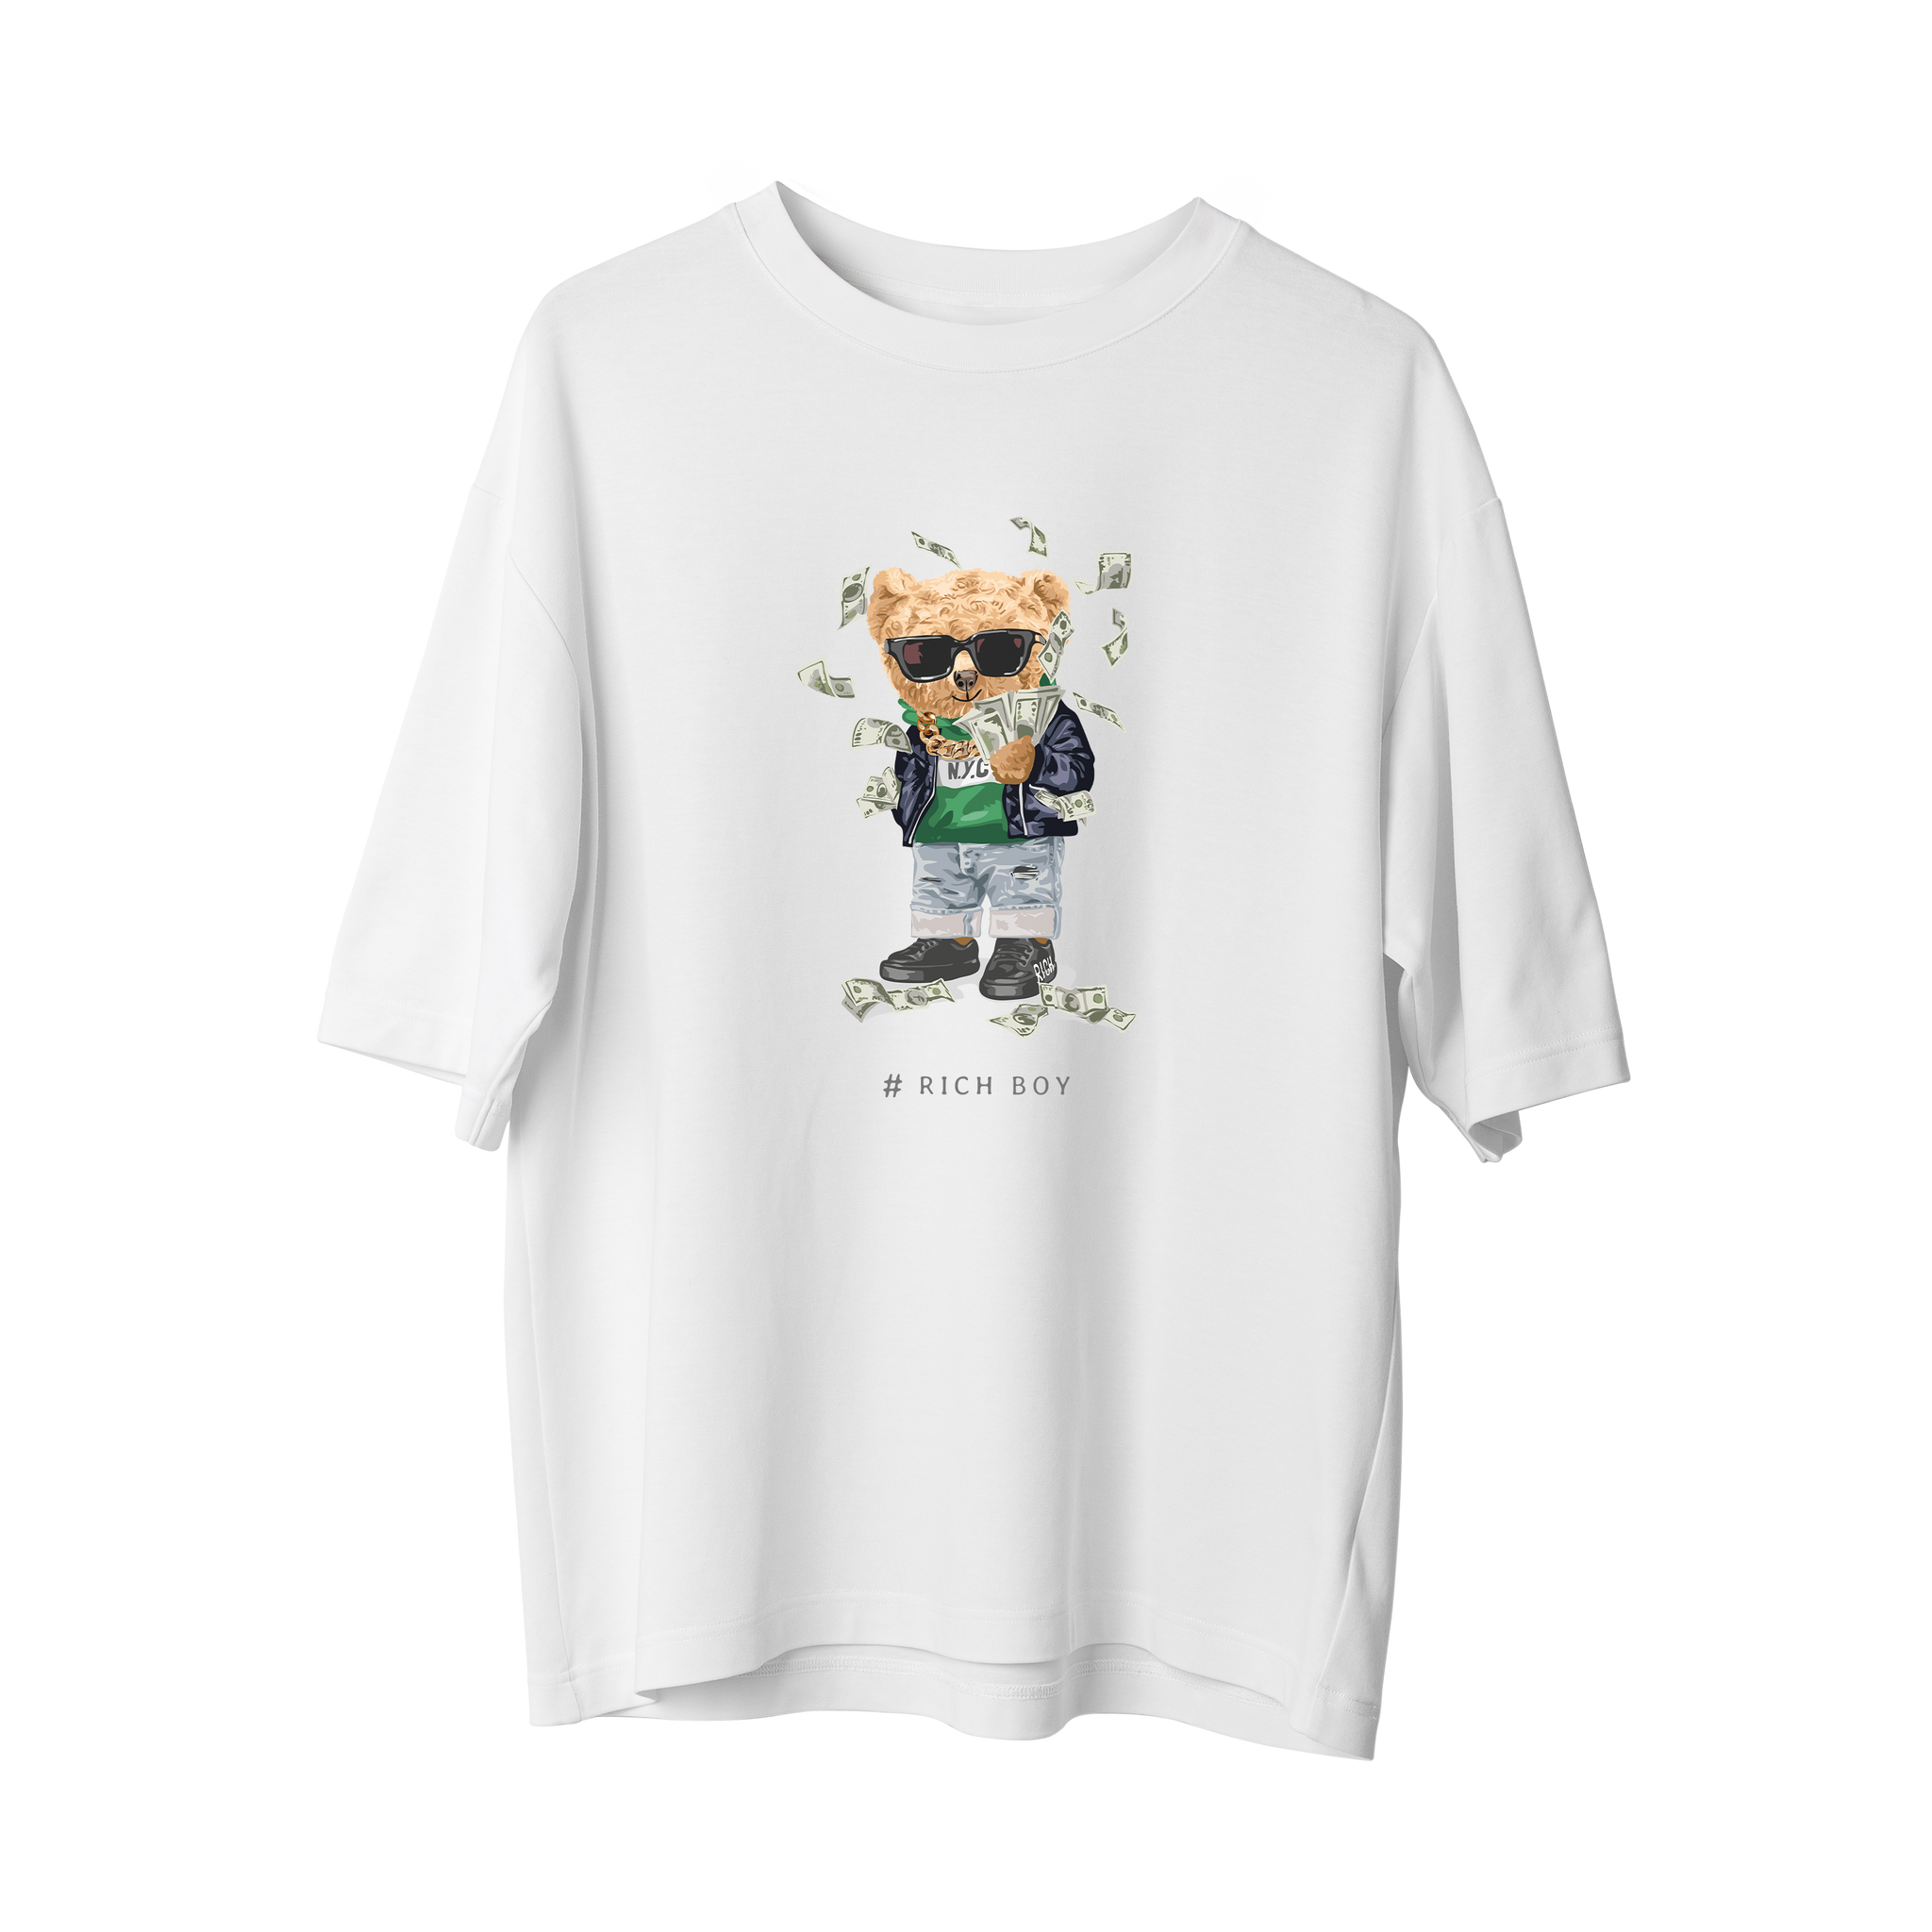 Money Bear- Oversize T-Shirt